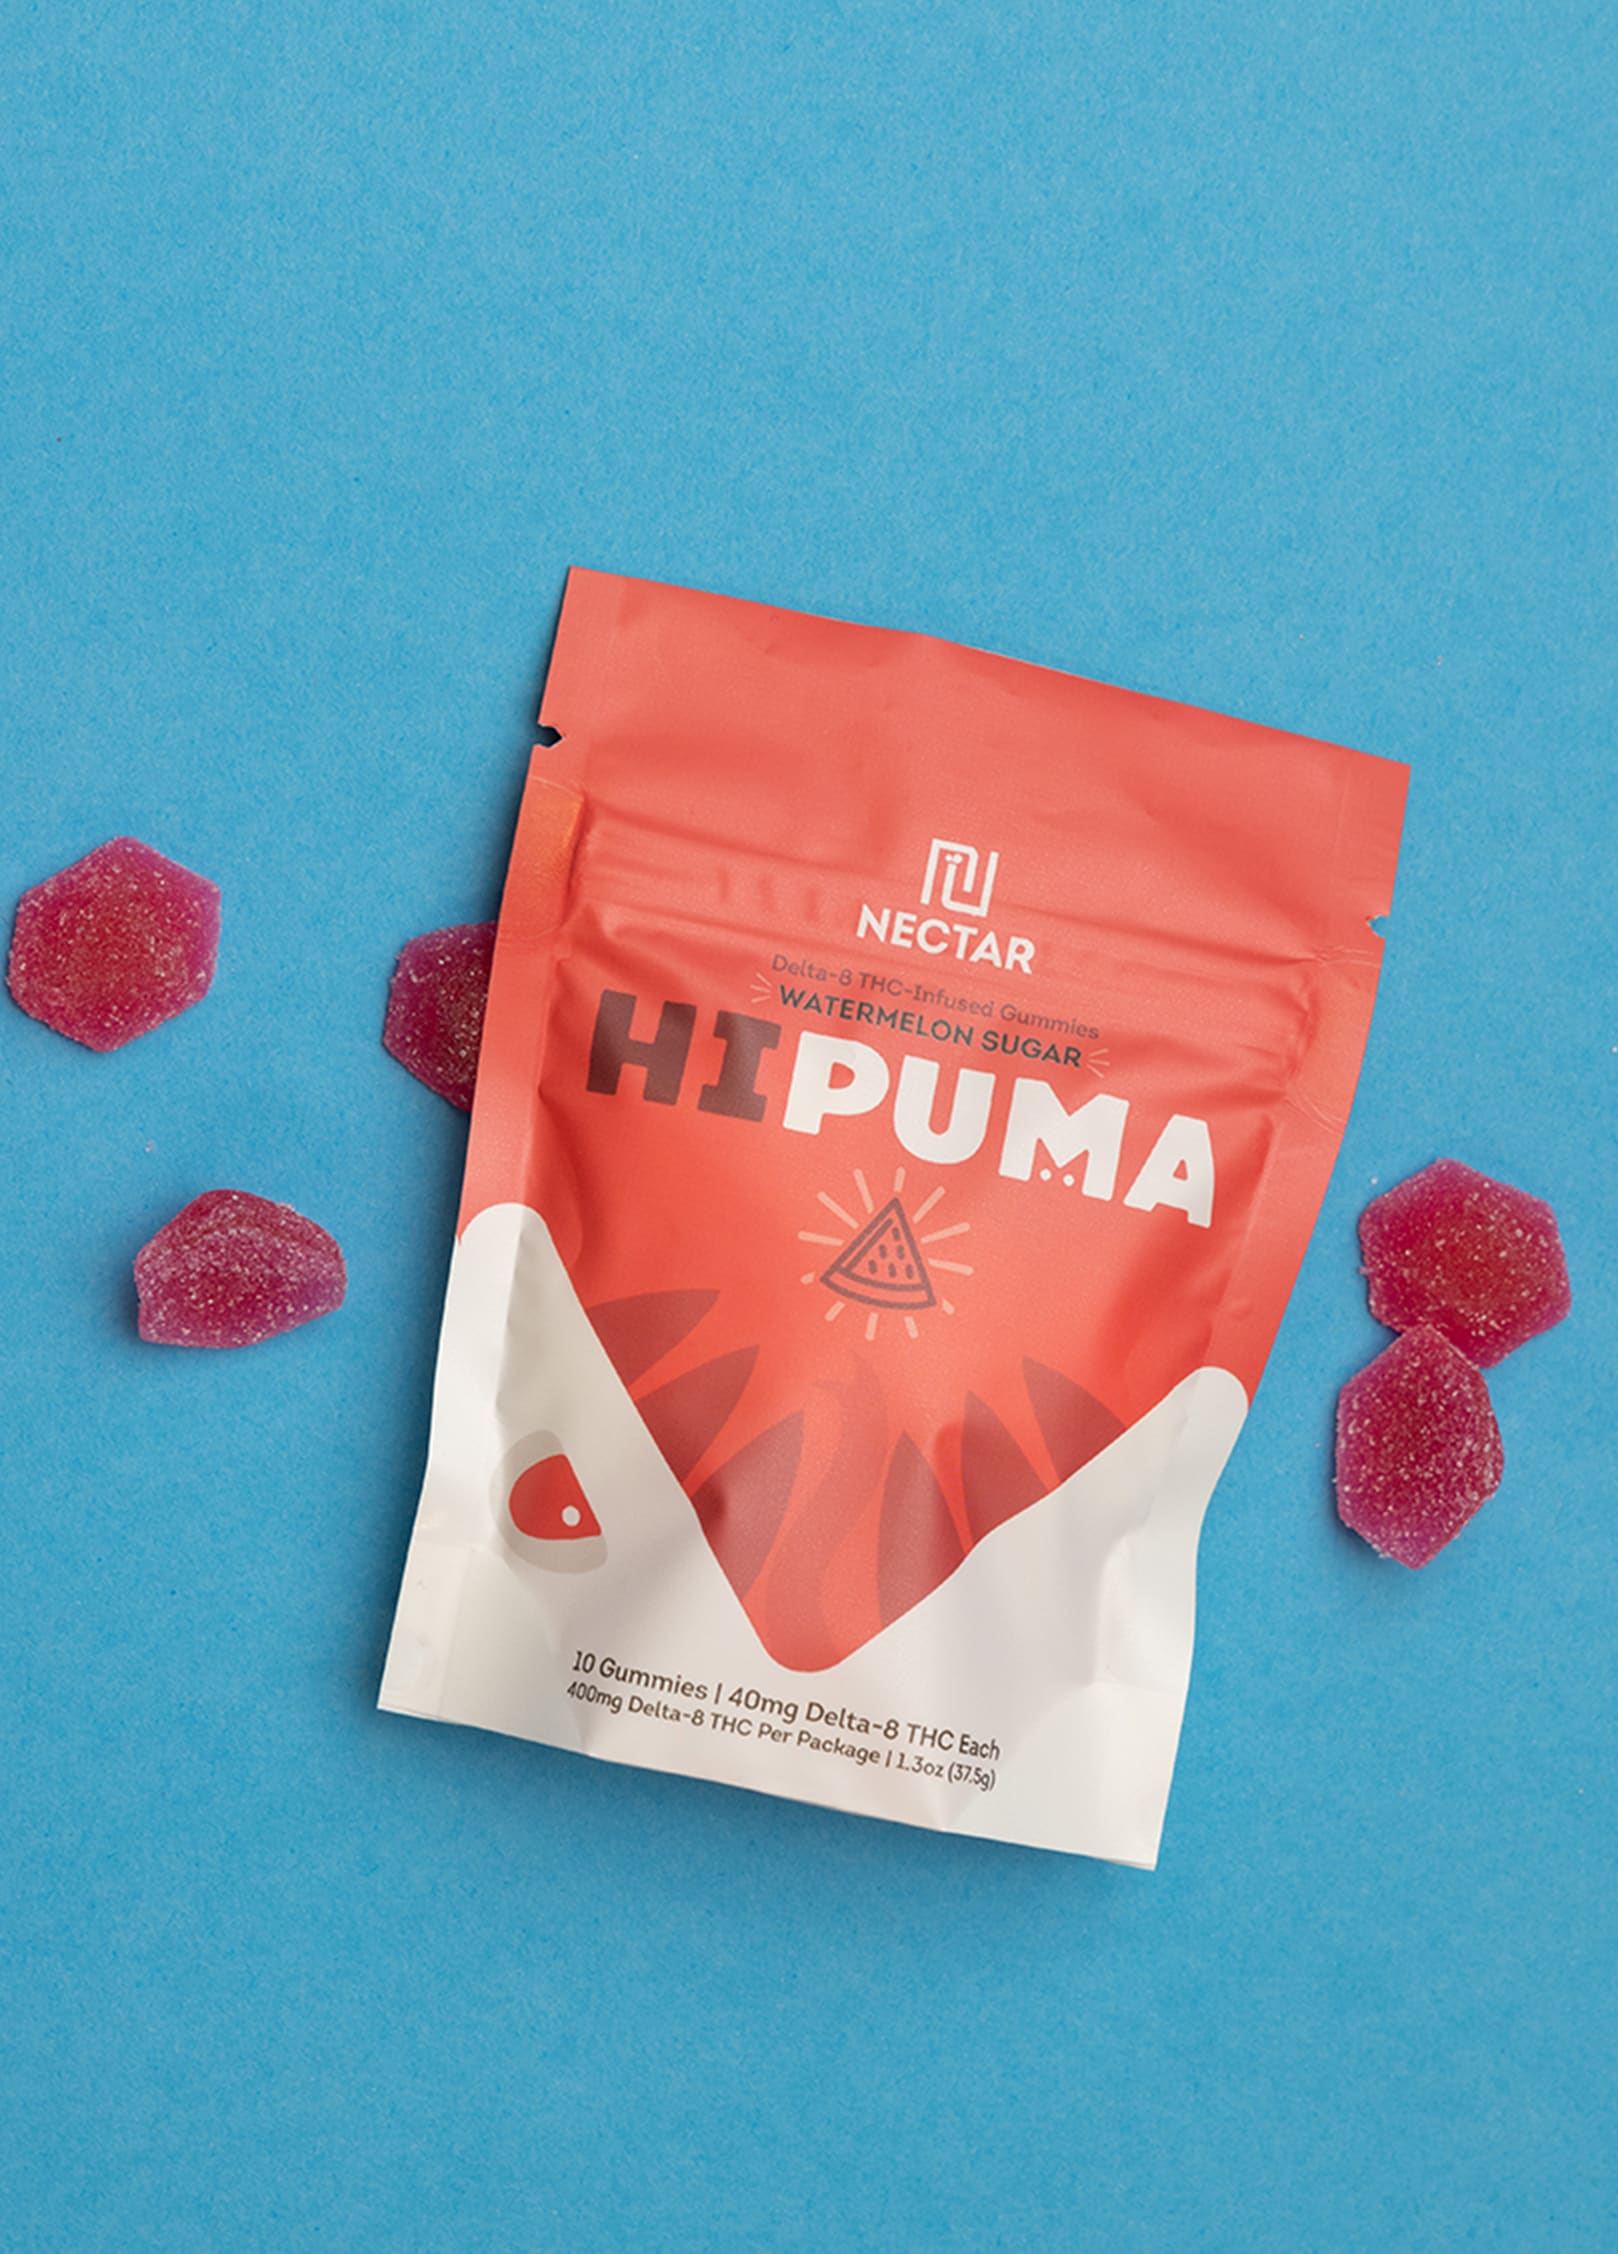 HiPuma Watermelon Sugar Flavor Delta-8 gummy package on blue background